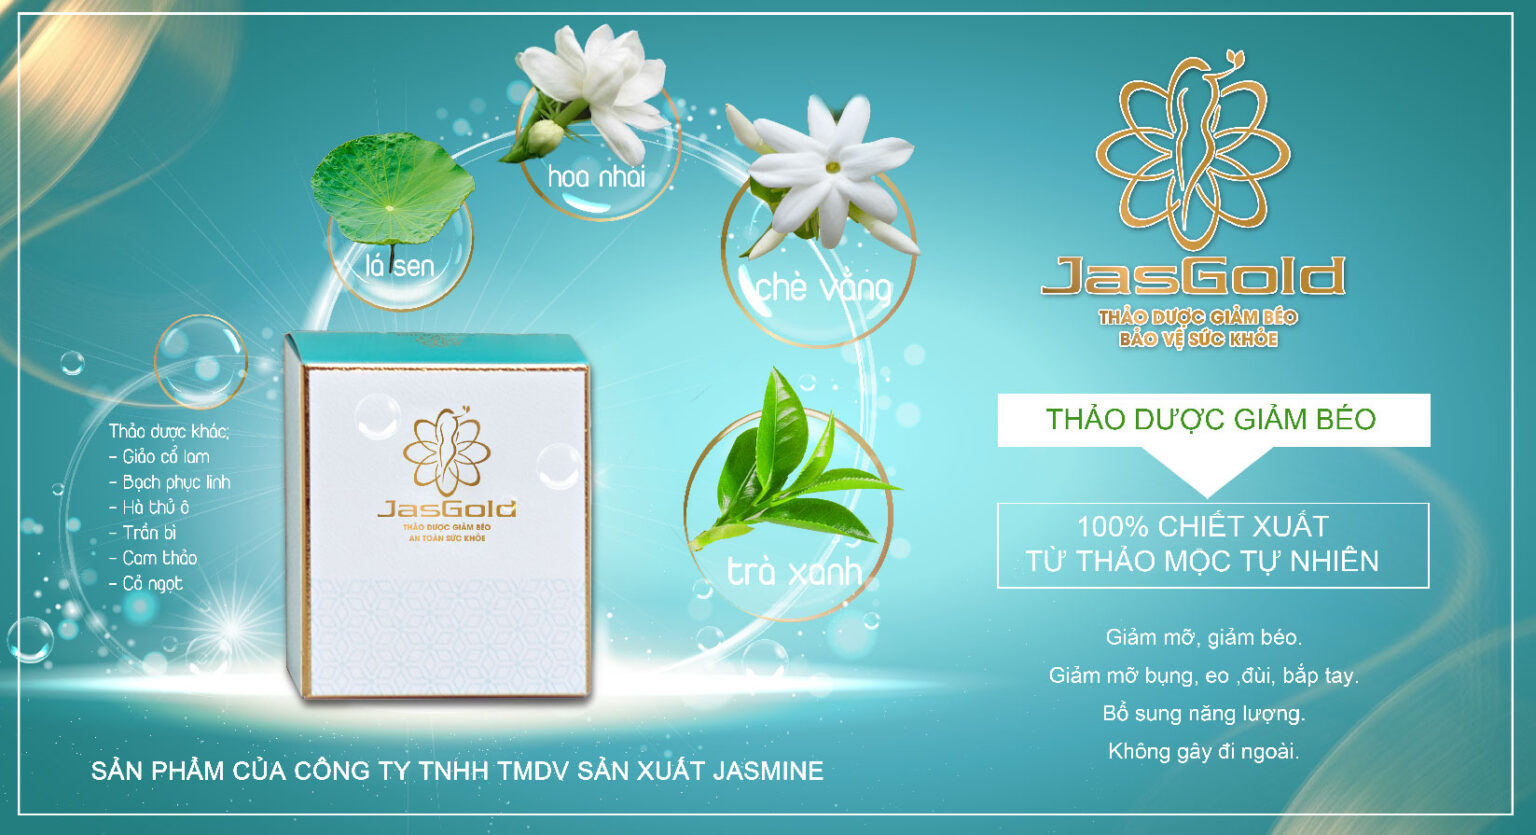 Trà giảm béo Jasmine Tea nỗ lực mang đến sản phẩm chất lượng cho người